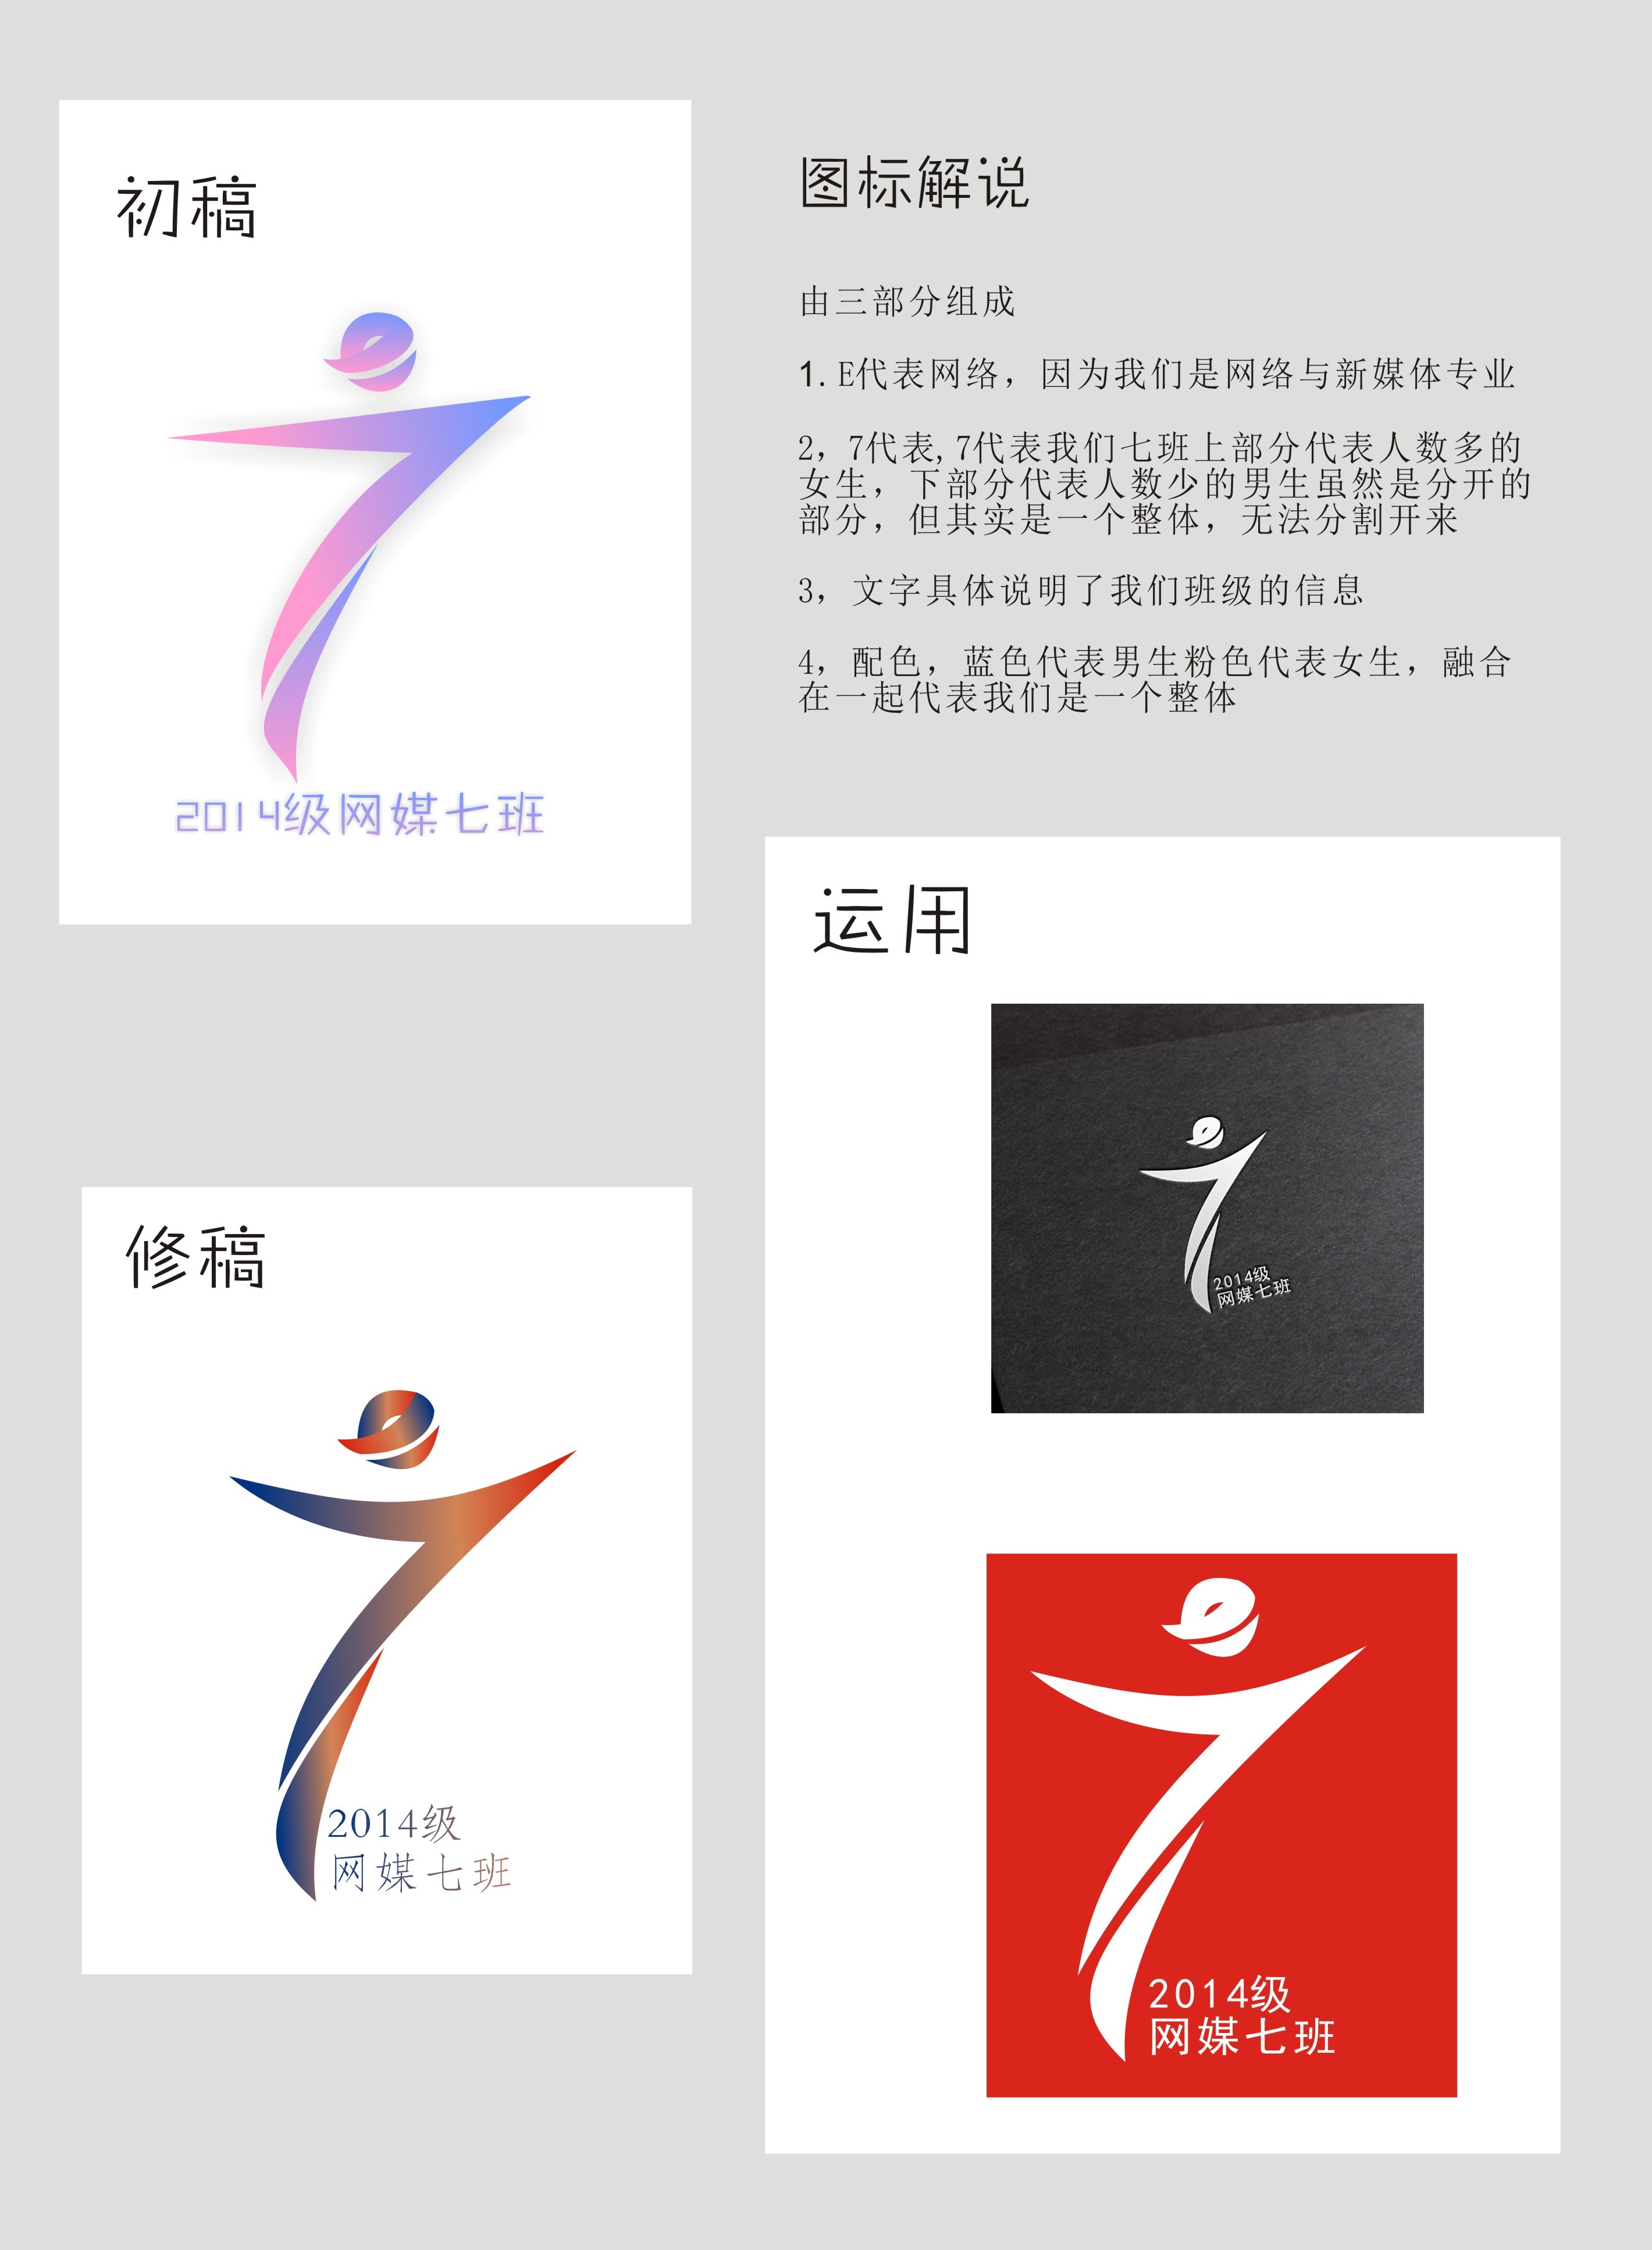 7班班徽logo设计及寓意图片